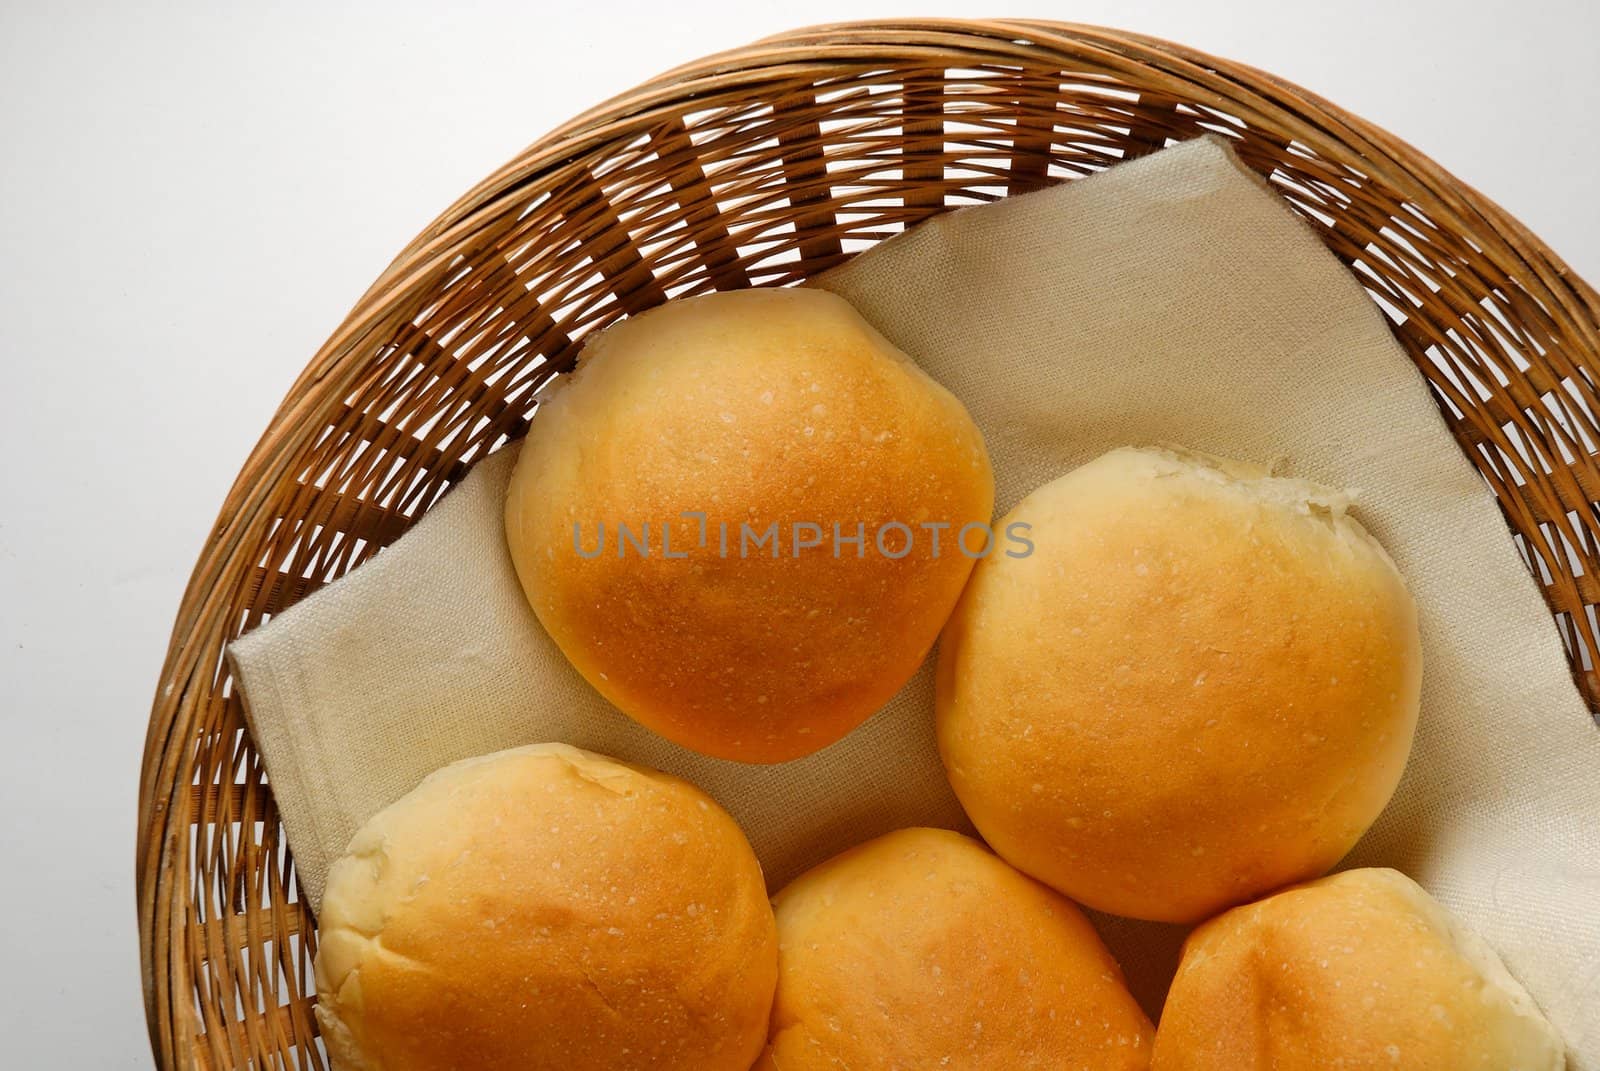 Bread rolls in basket by Laborer